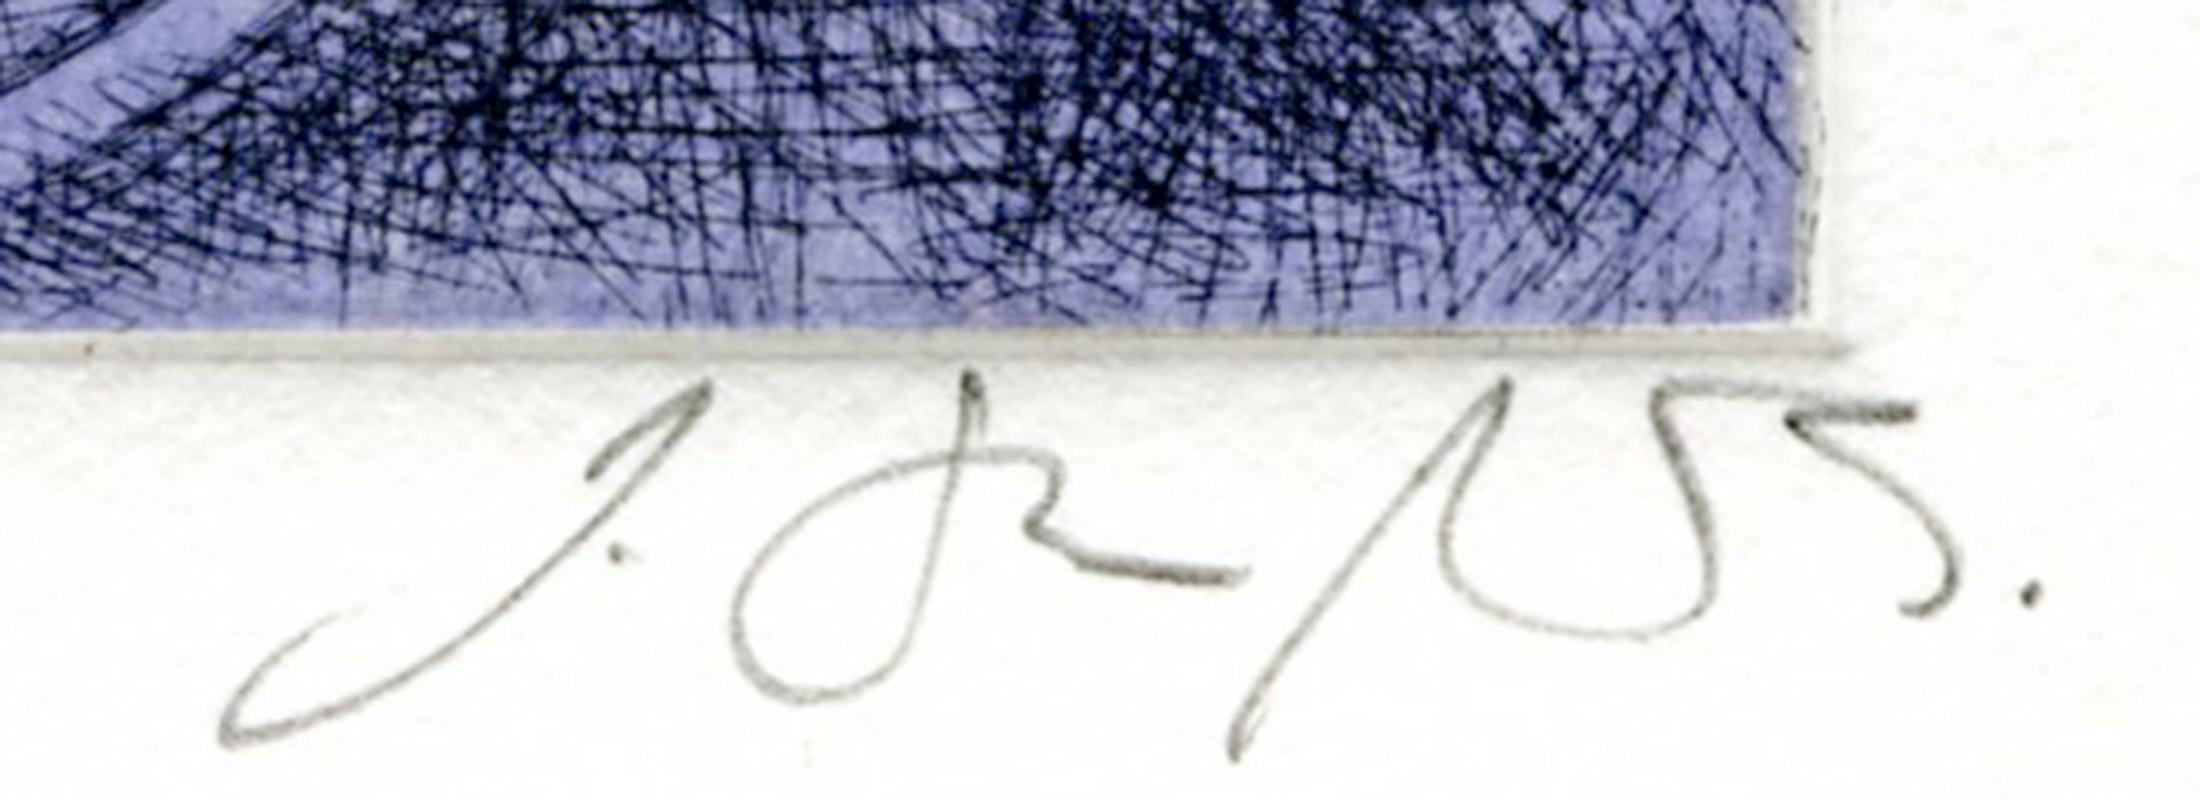 Signé et numéroté par l'artiste.
Edition : 25
Imprimé sur du papier Hahnemuhle 
Publié par Neptune Fine Arts
Condit : excellent
Taille de la plaque/image : 
Taille de la feuille :

